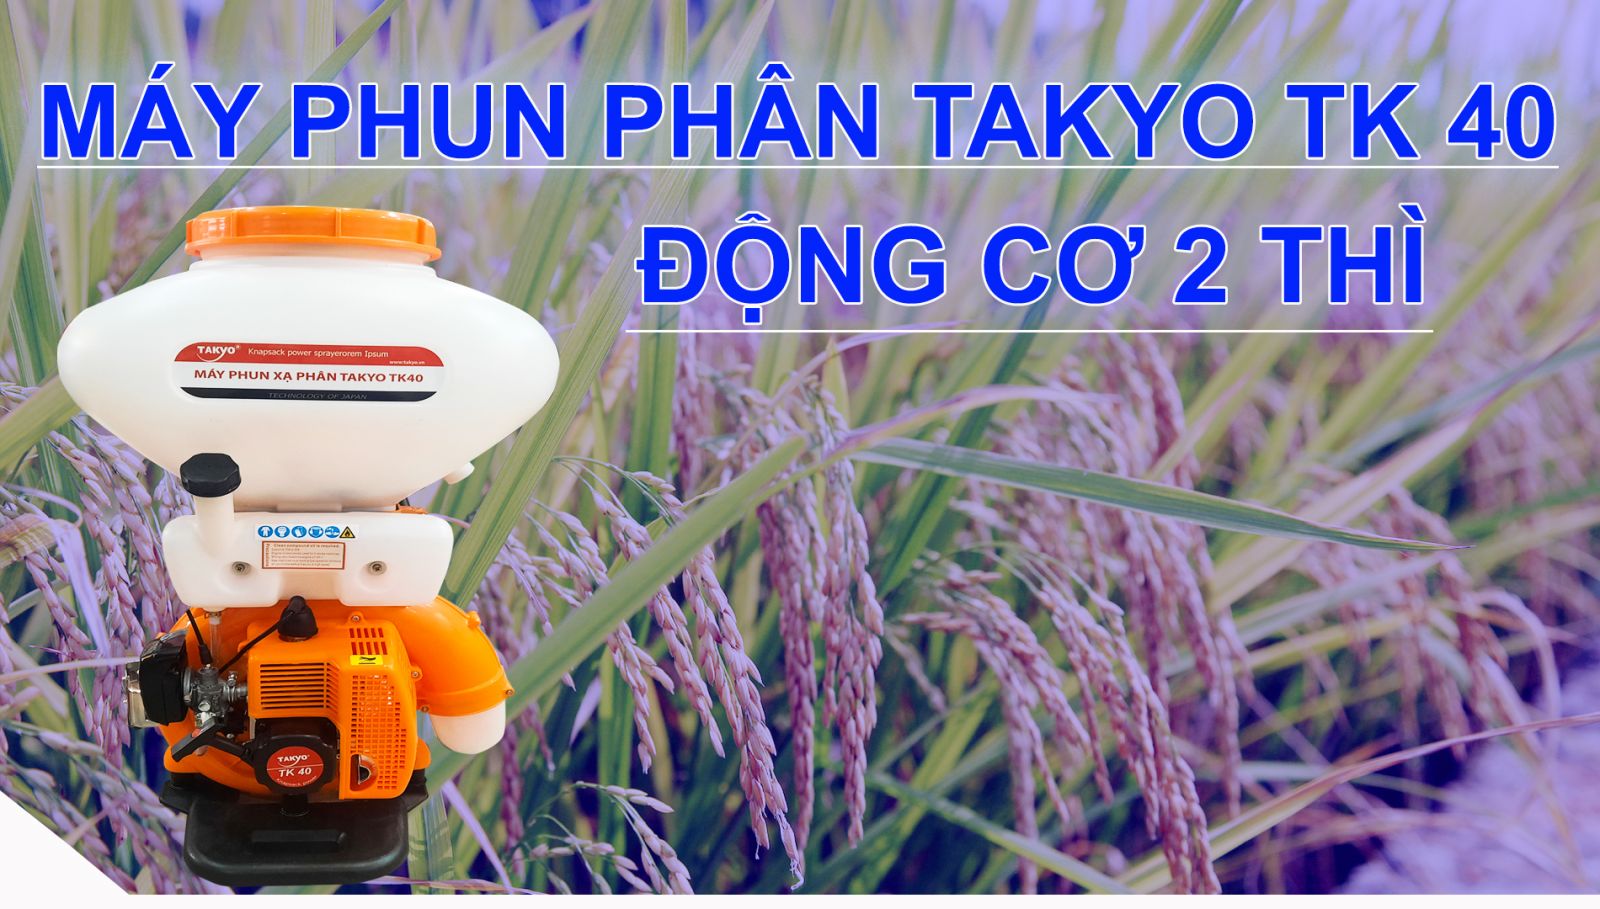 may-phun-phan-takyo-tk40-dong-co-2thi